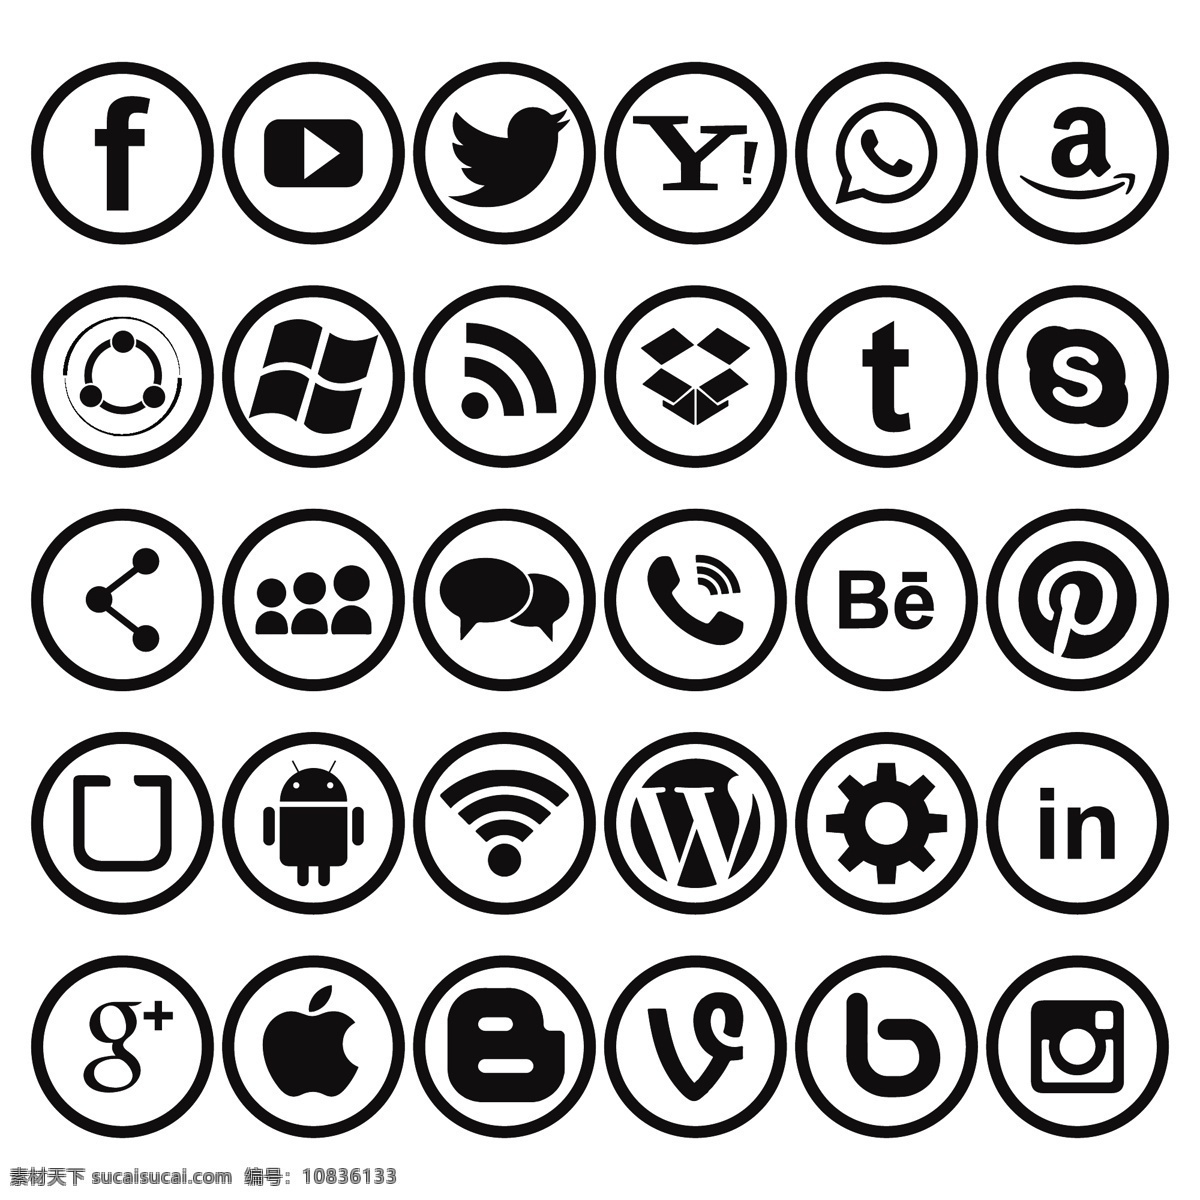 黑与白 社交 网络 图标 背景 标志 商业 摘要 技术 脸谱网 手机 移动 instagram 营销 网页 互联网 丰富多彩 数字 符号 通信 推特